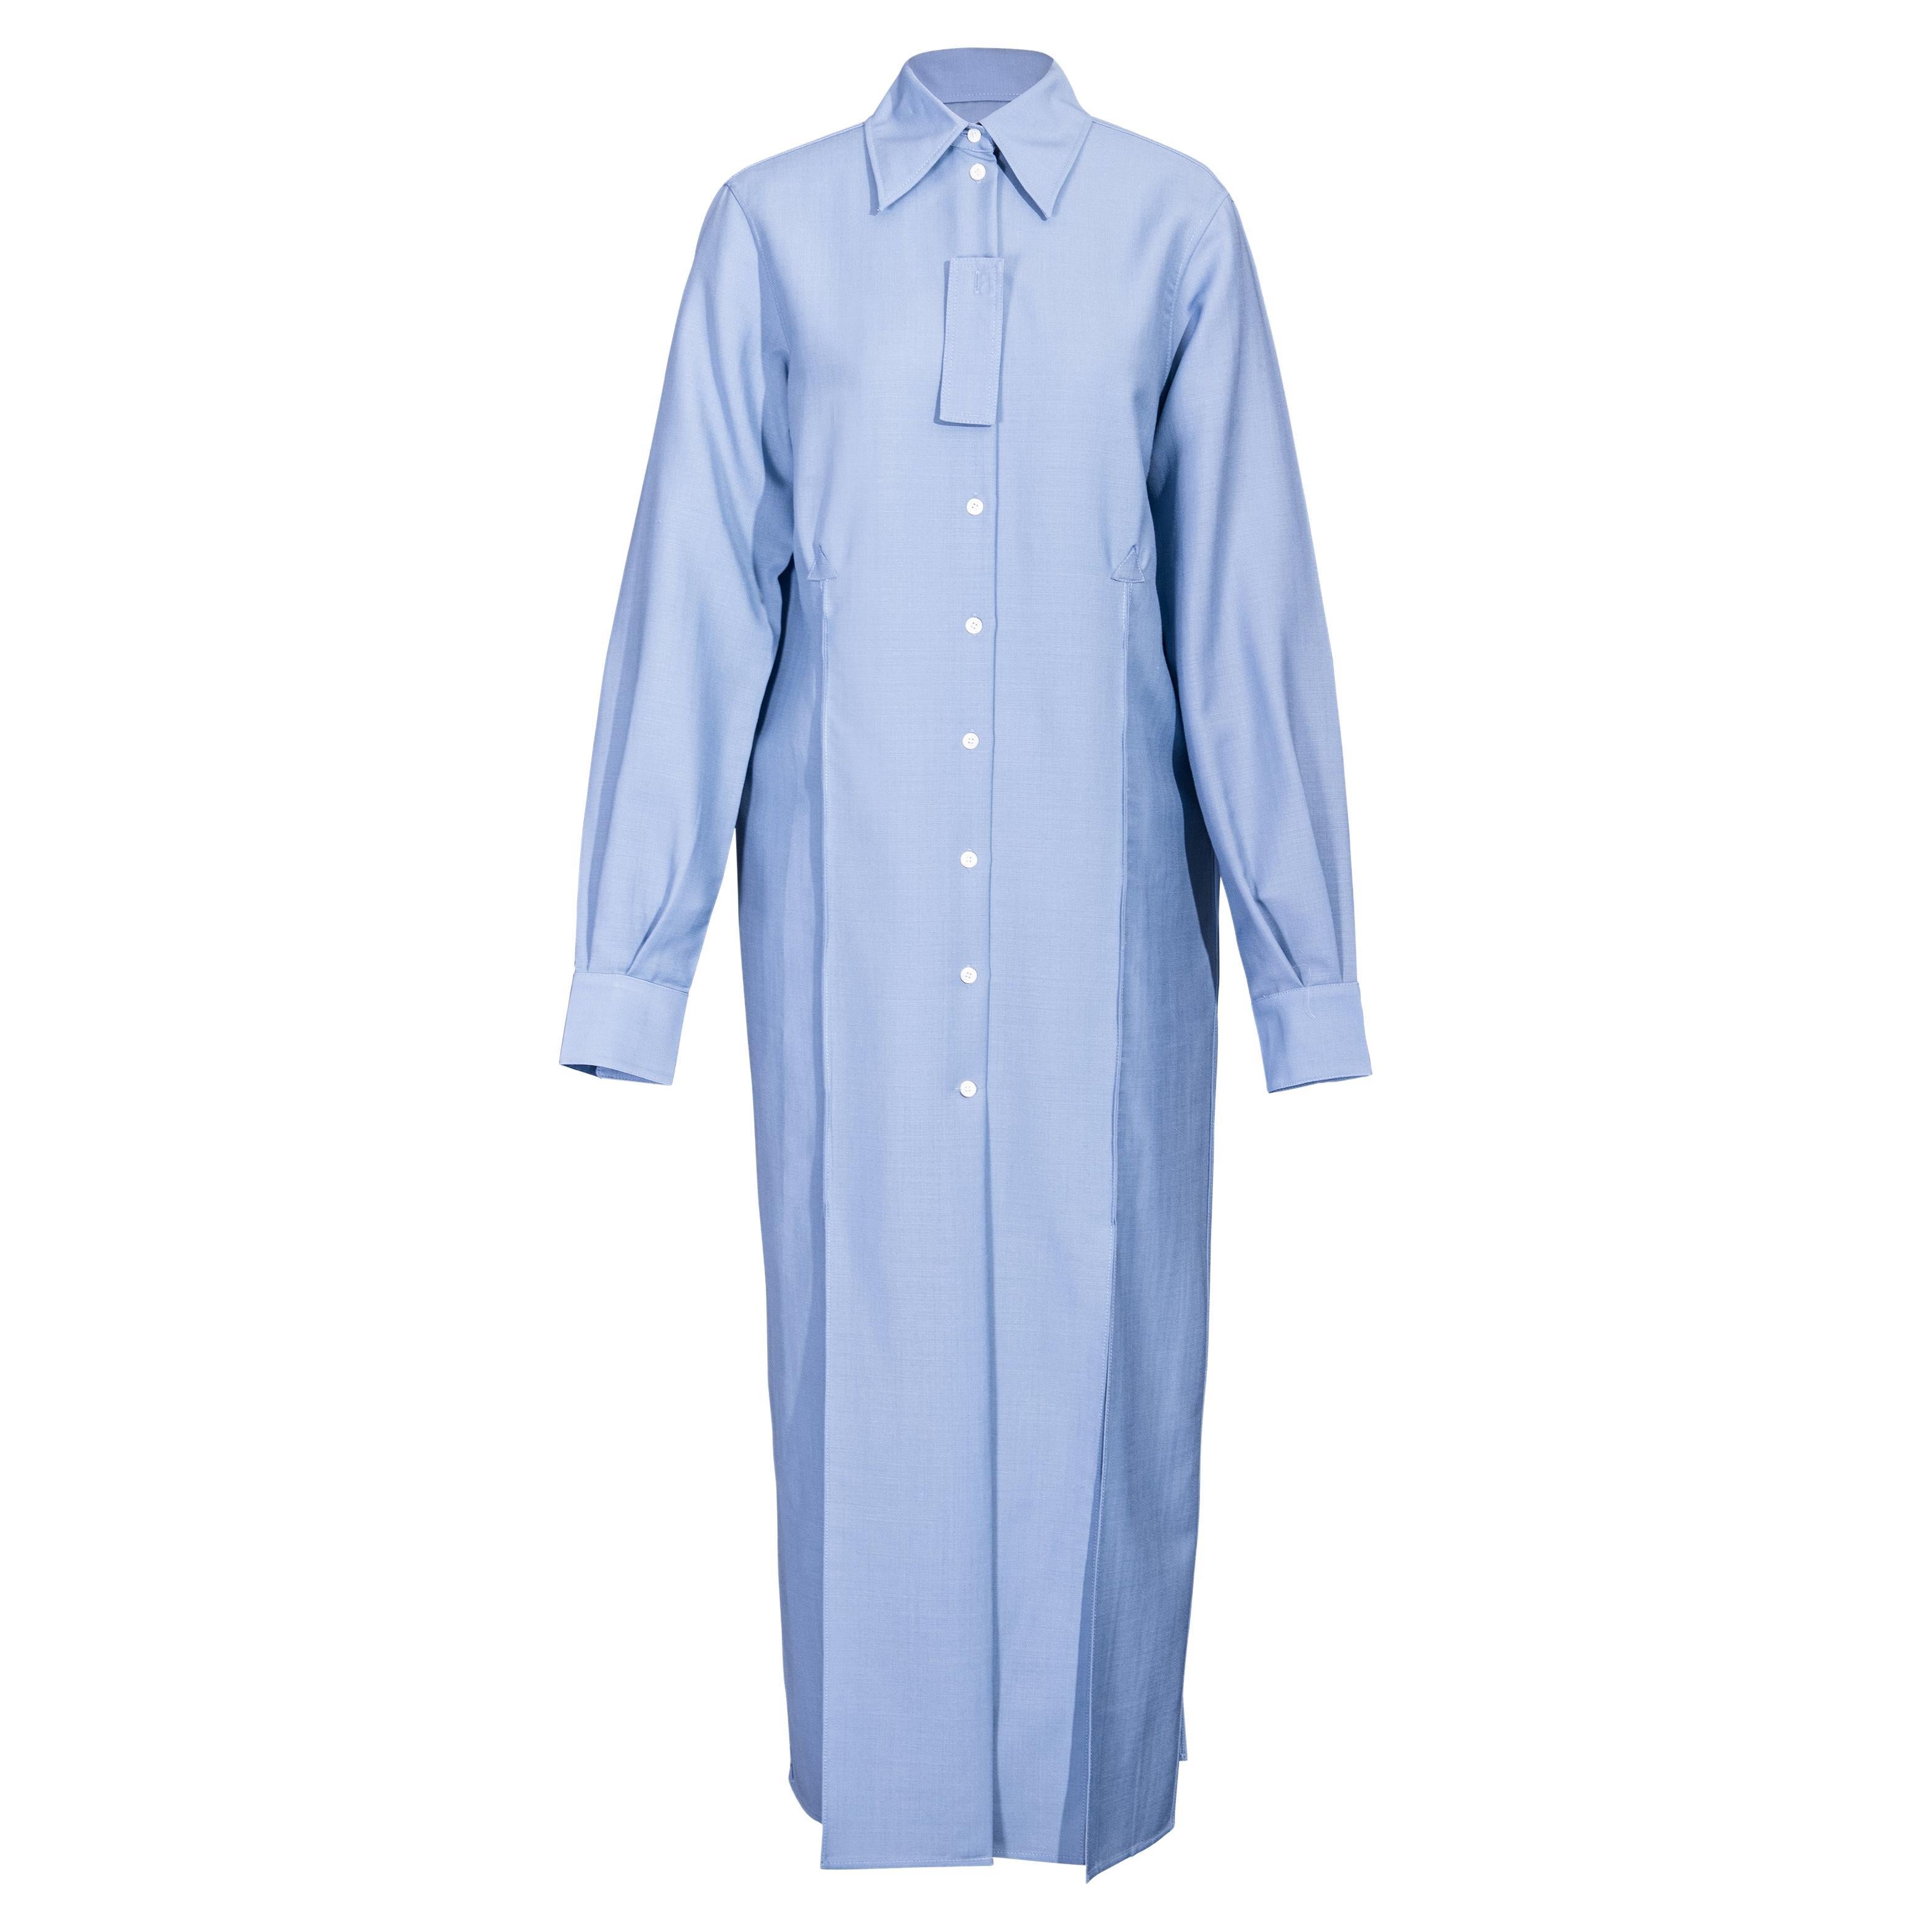 A/W 2017 Céline by Phoebe Philo Button-Up Light Blue Shirt Dress For Sale